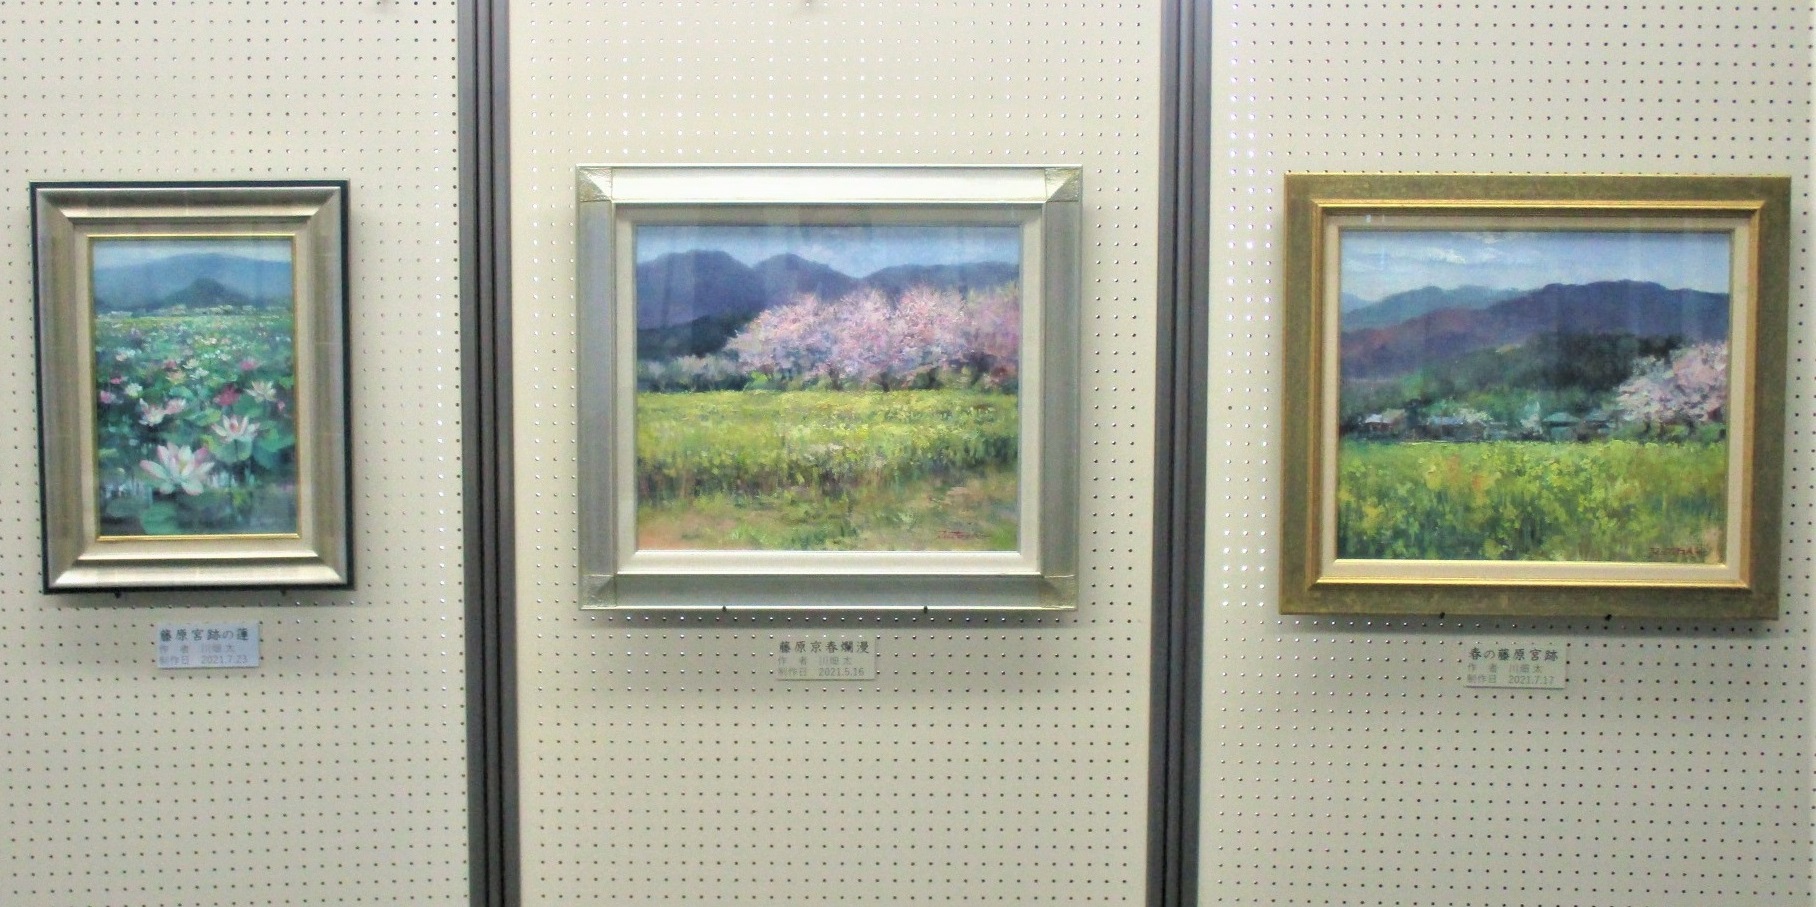 洋画家 川畑 太 様が描いた3つの絵画作品を写した写真